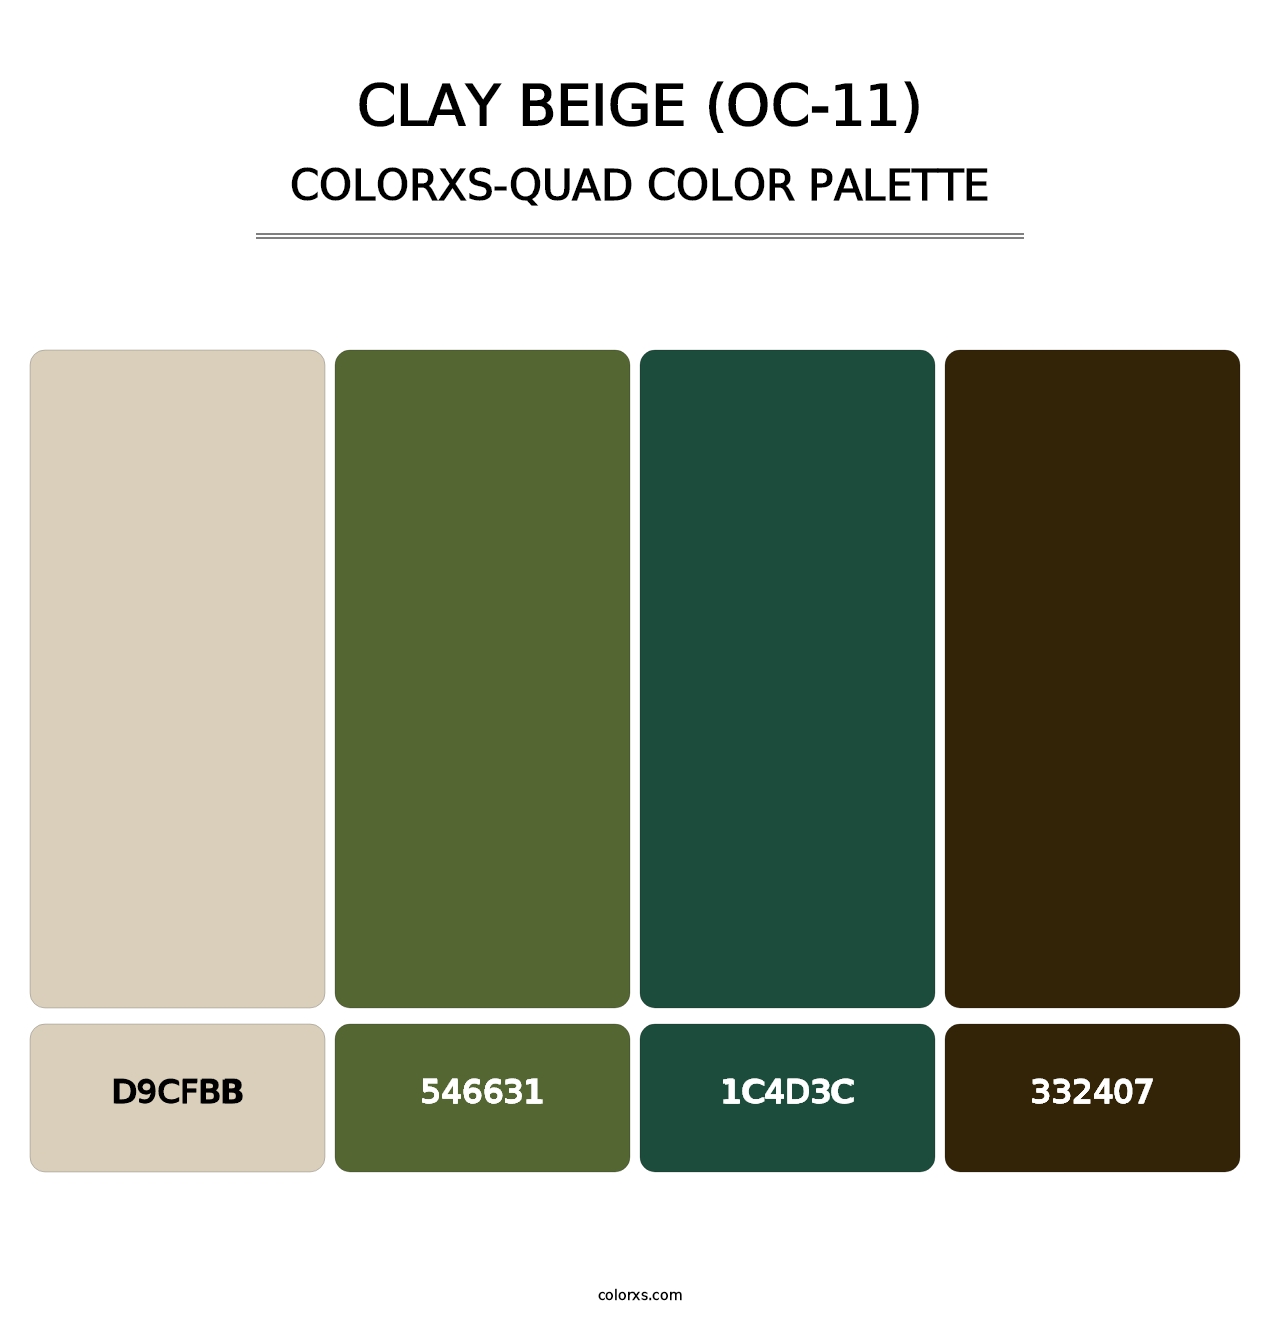 Clay Beige (OC-11) - Colorxs Quad Palette